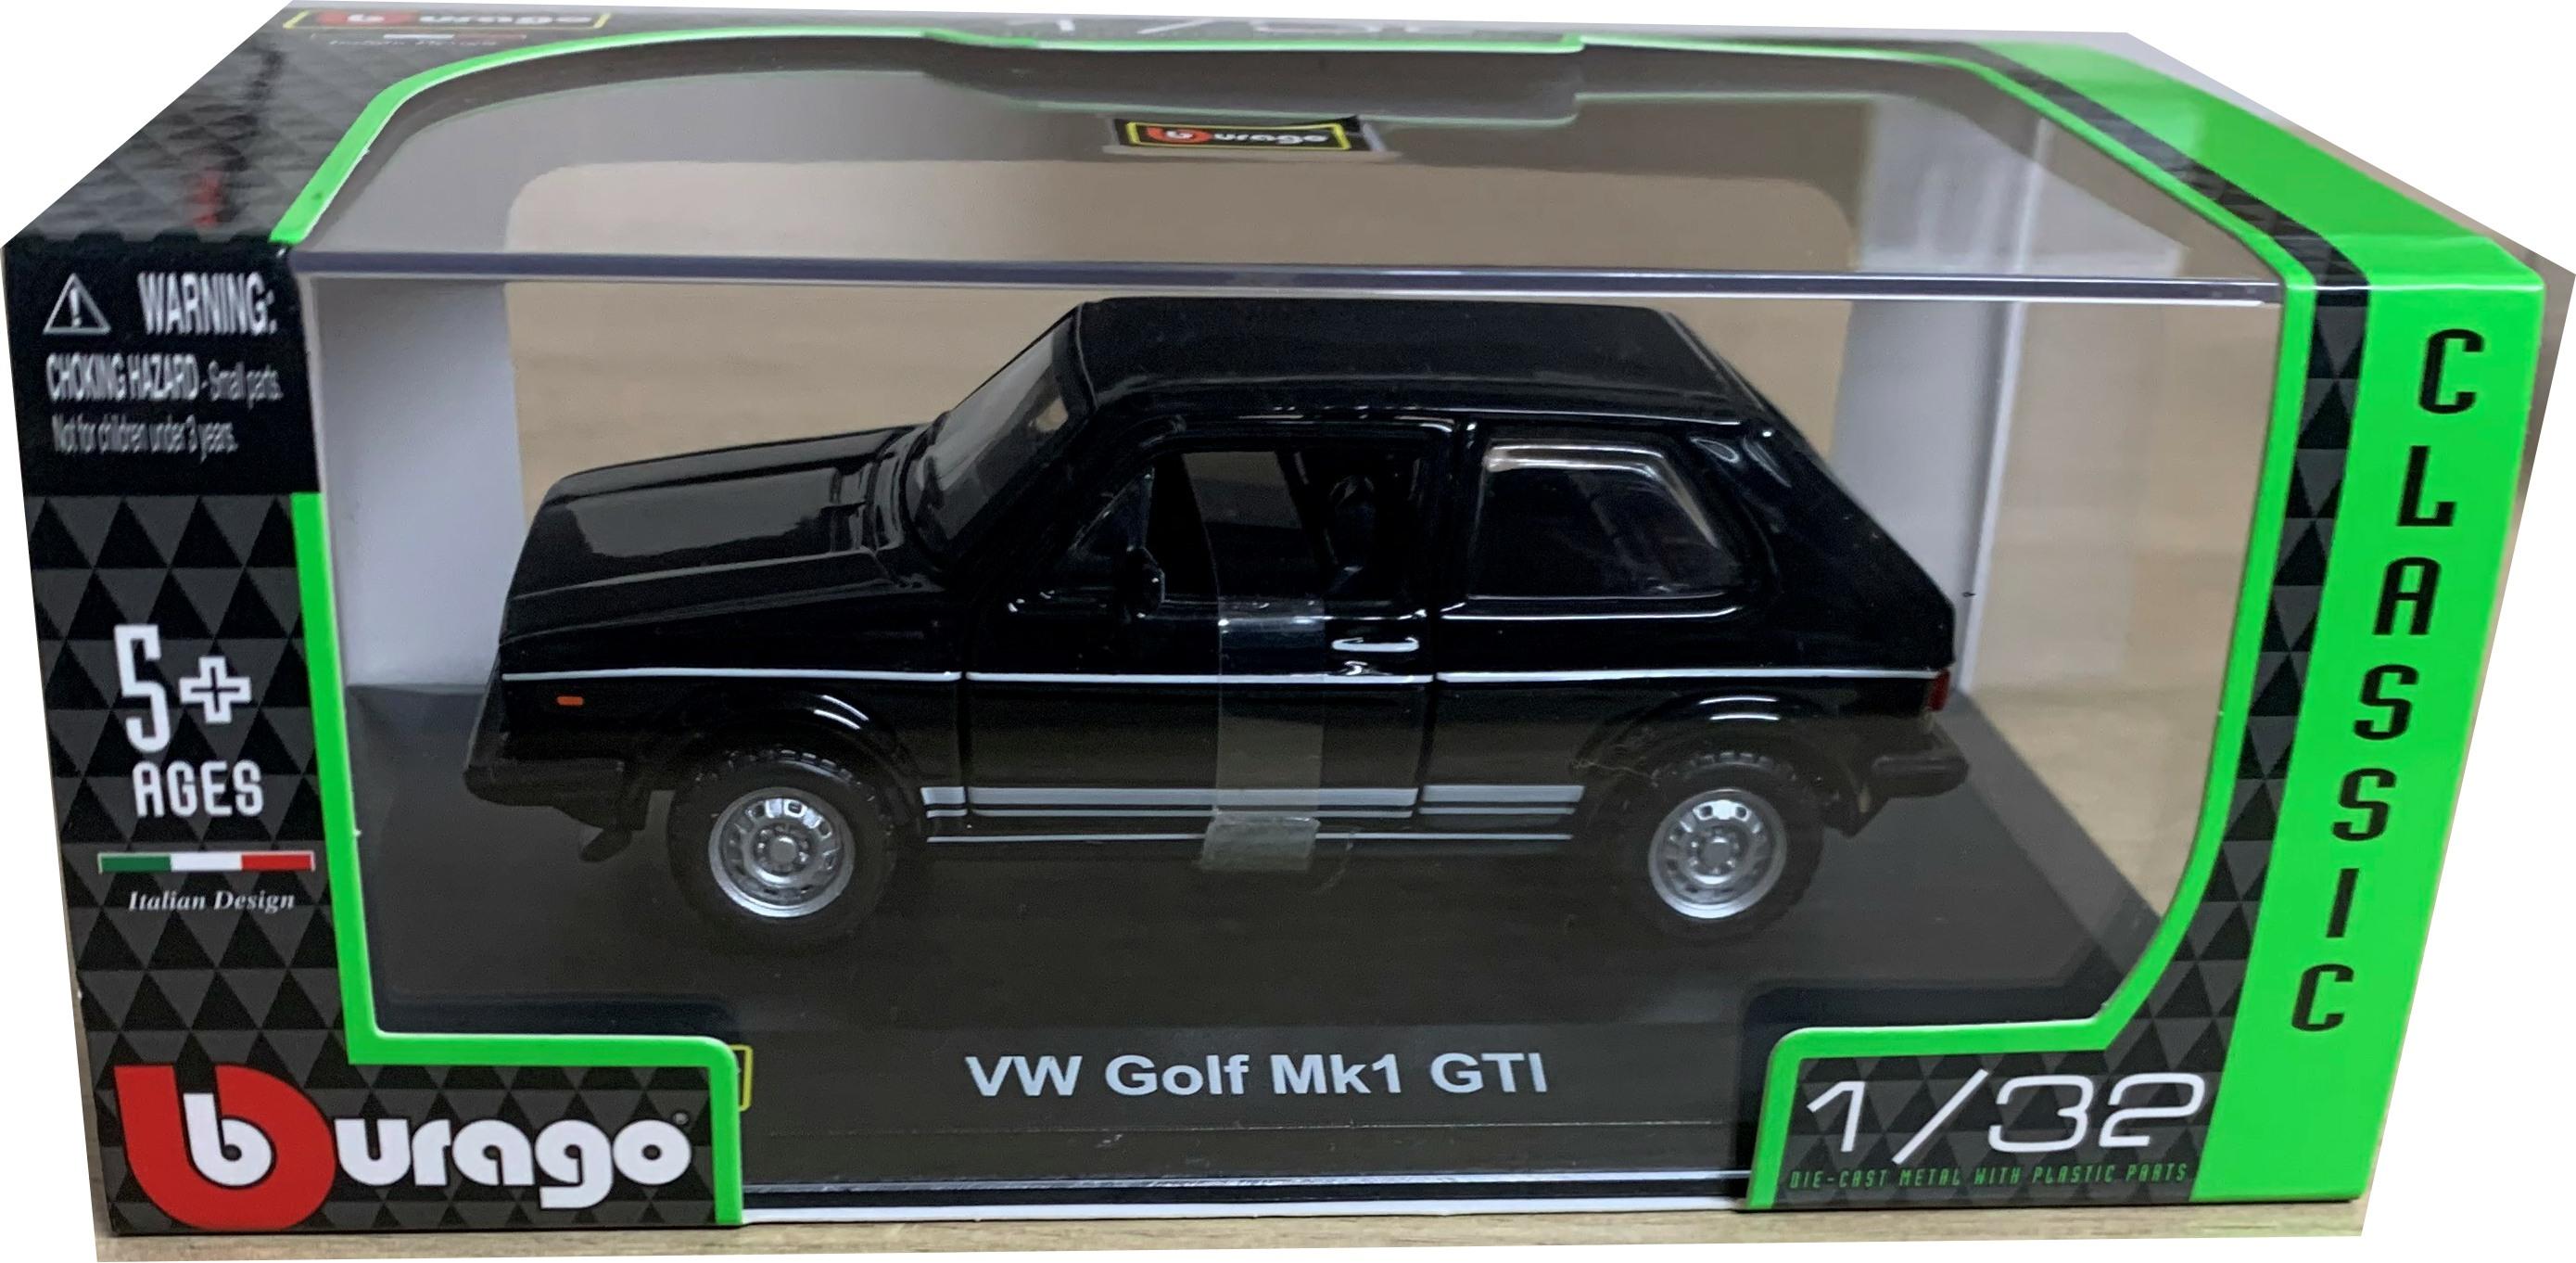 1:32 scale diecast Volkswagen models